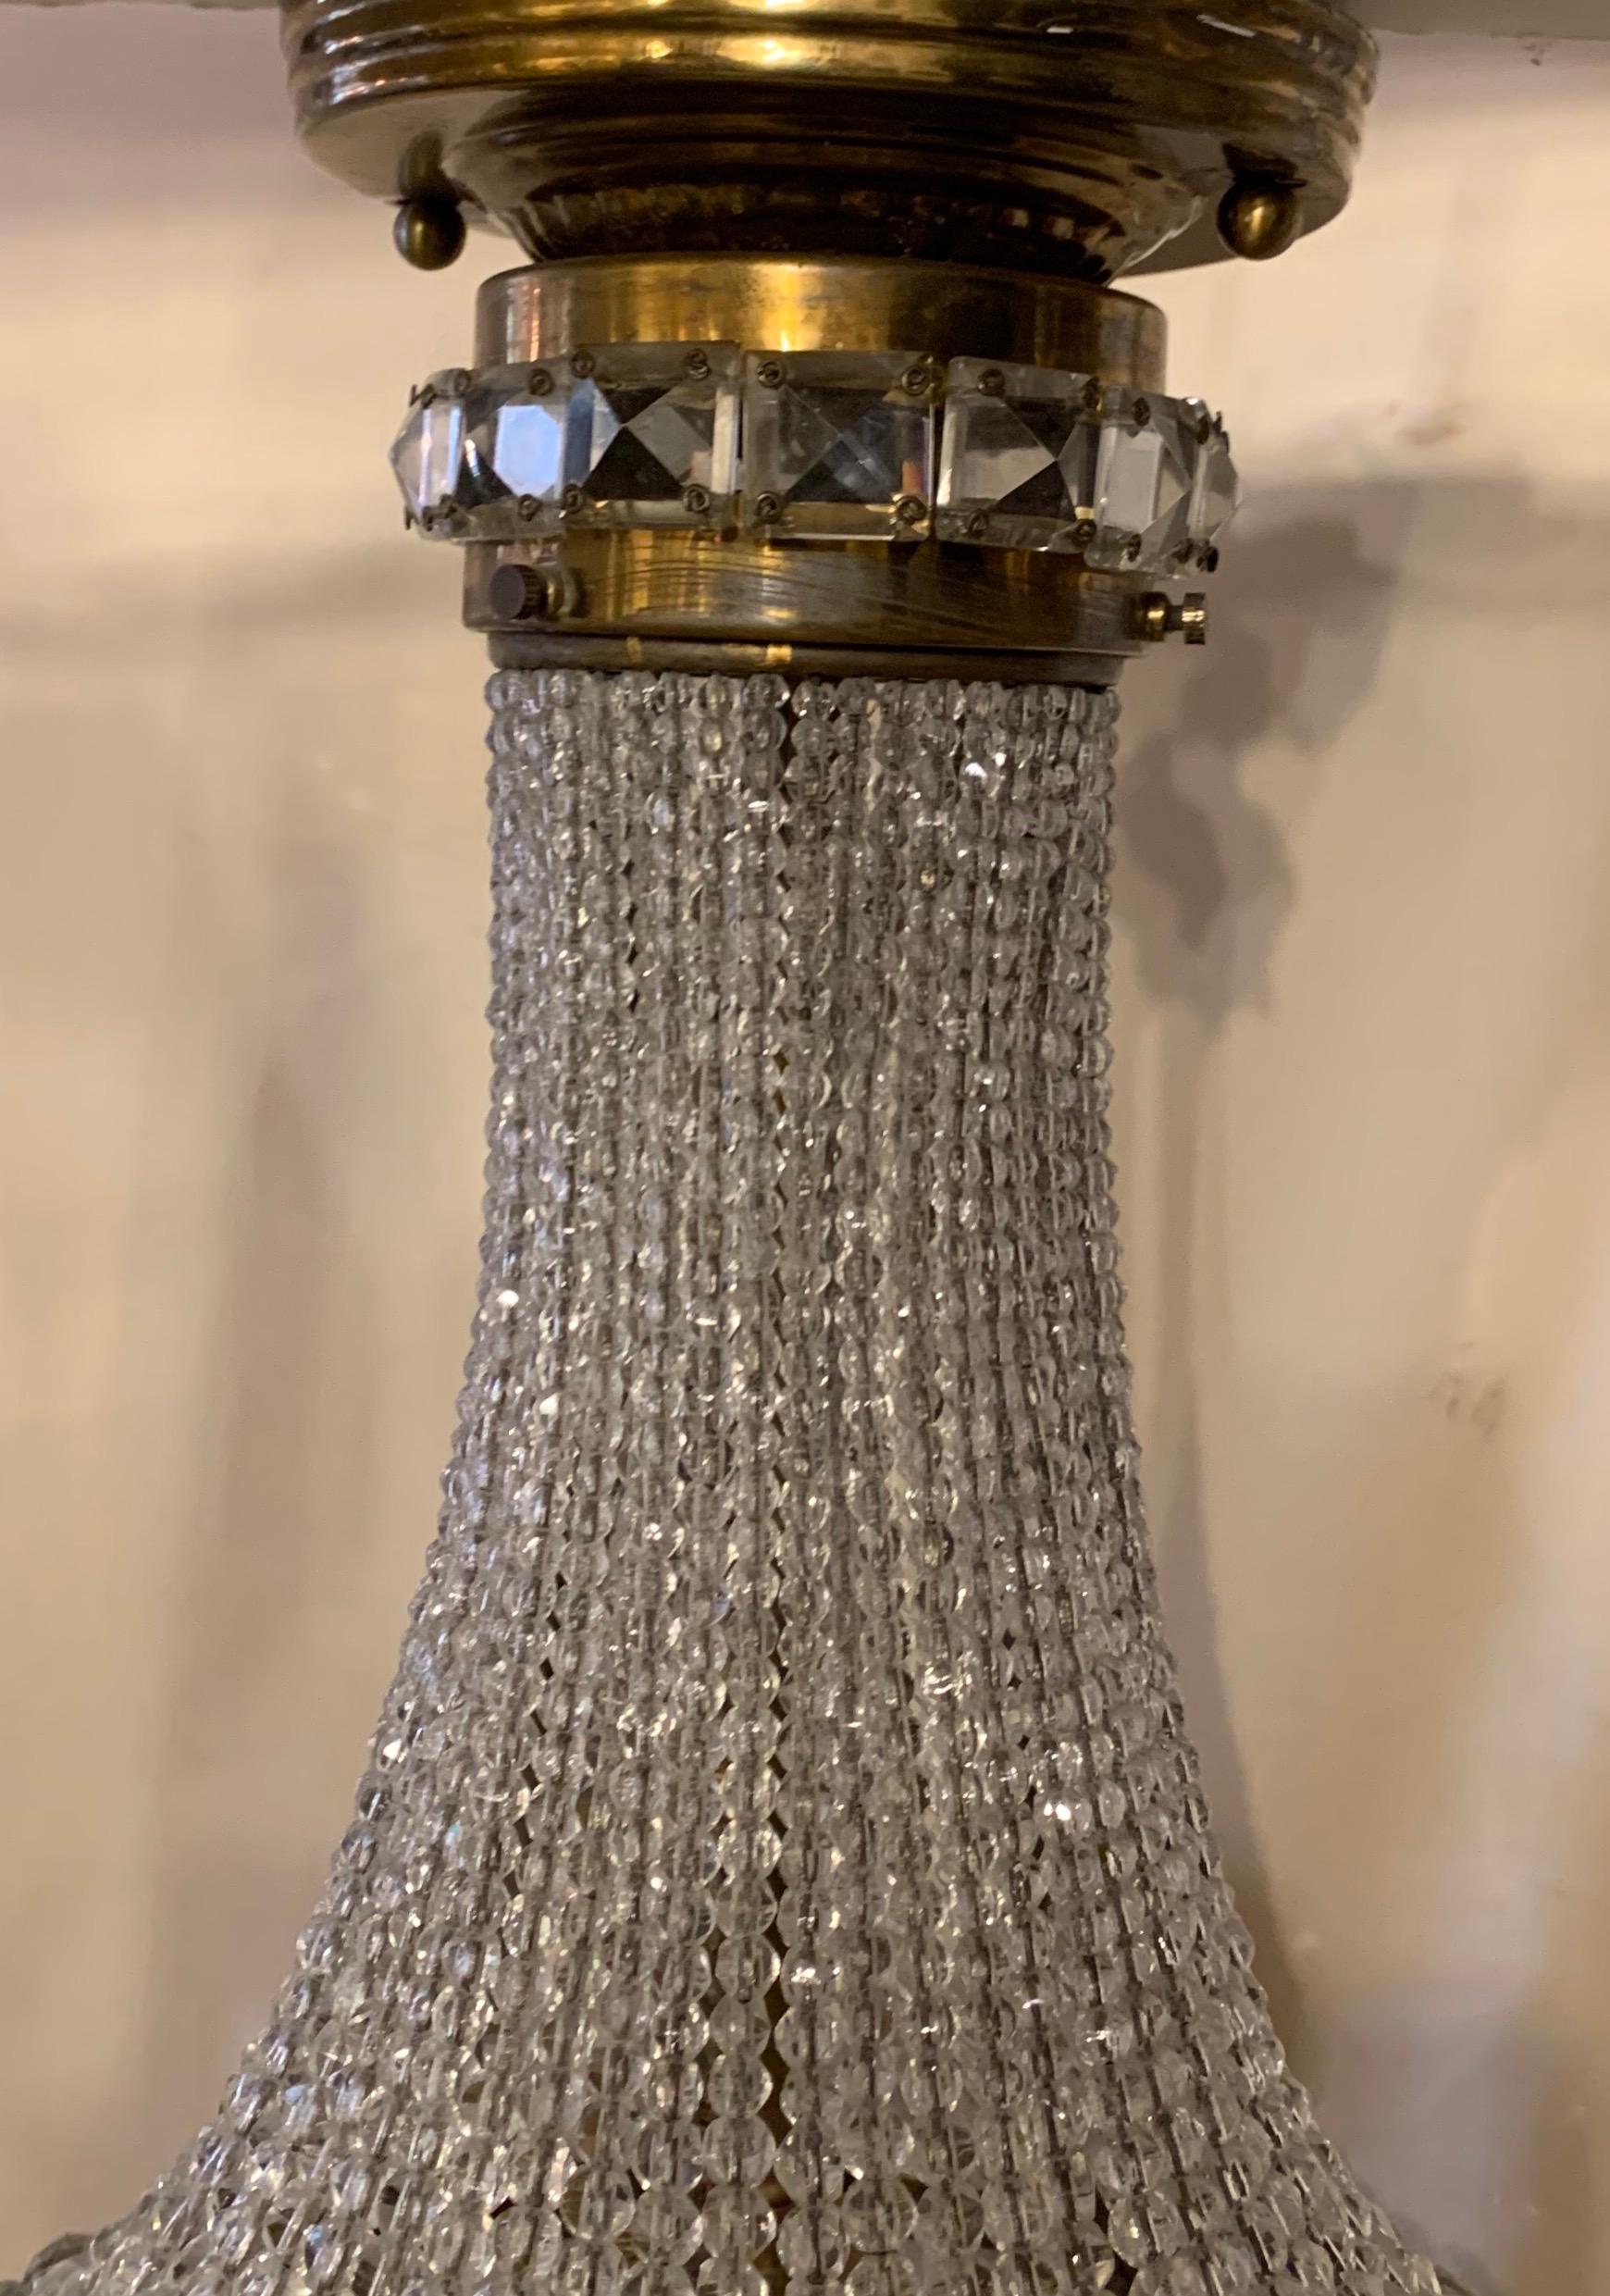 Magnifique luminaire encastré en forme de panier en cristal perlé et laiton, recâblé avec une douille Edison et prêt à être installé avec des supports de montage.